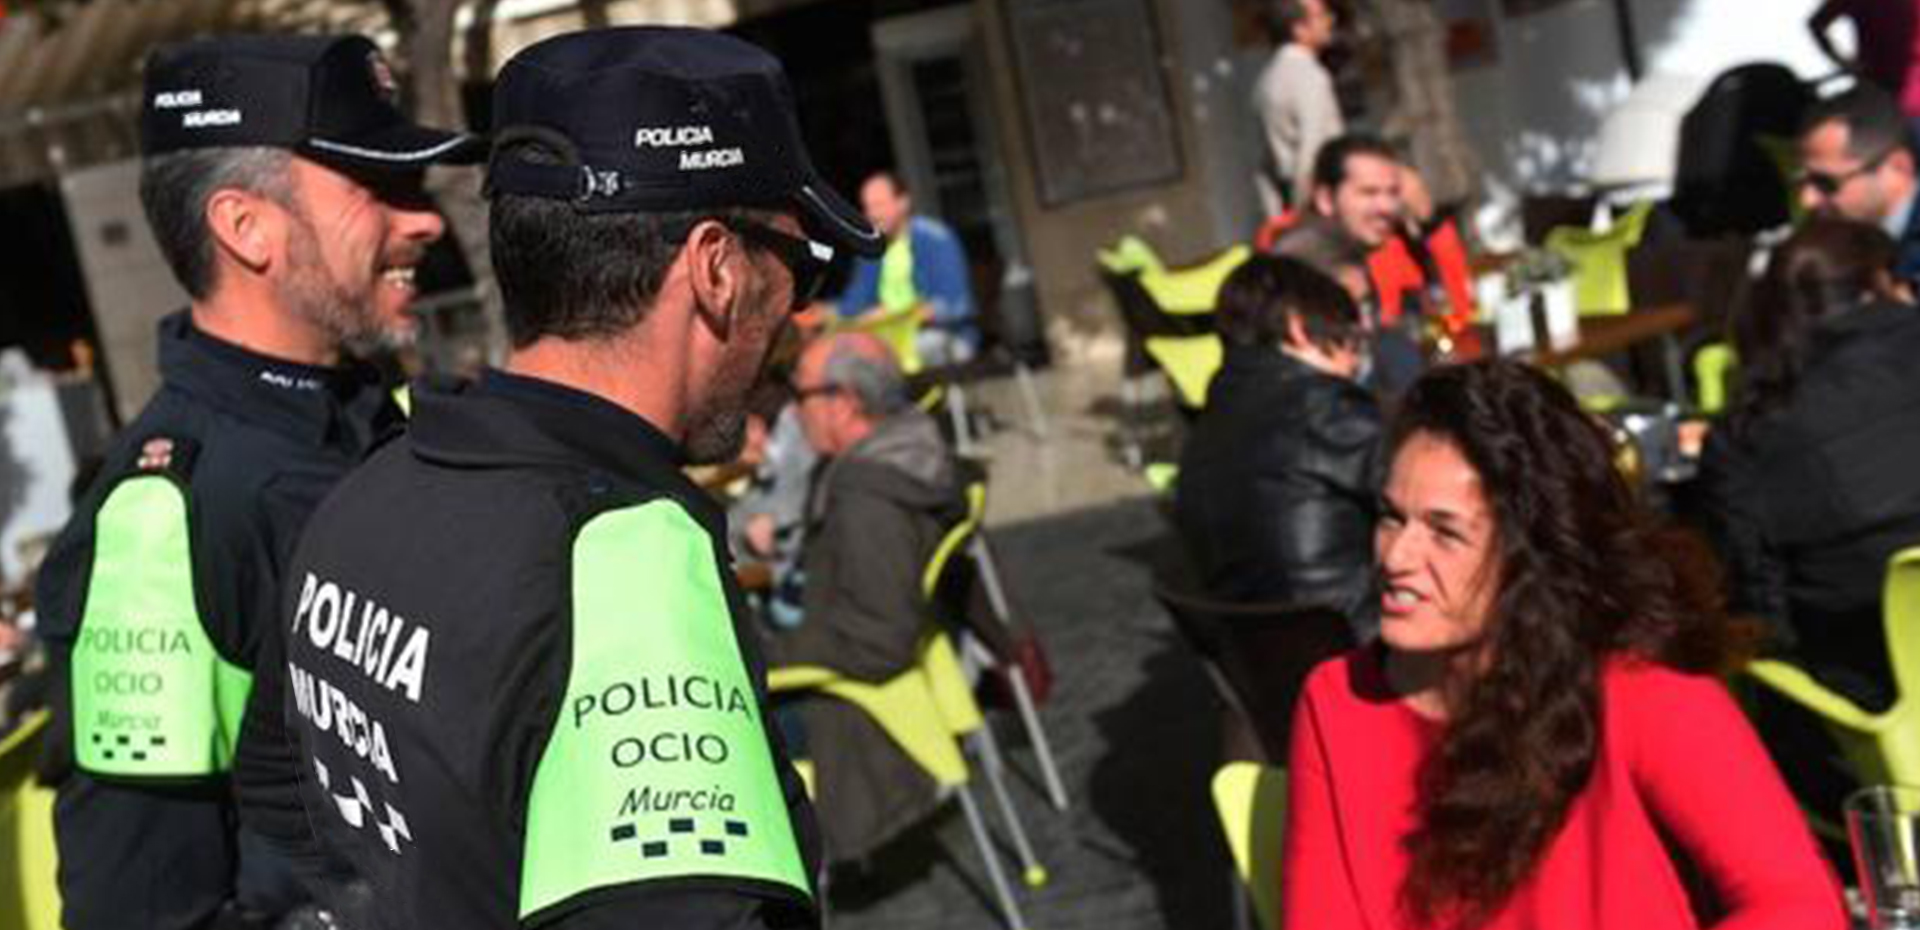 Agentes de policía de ocio conversando con clientes de terraza de establecimiento